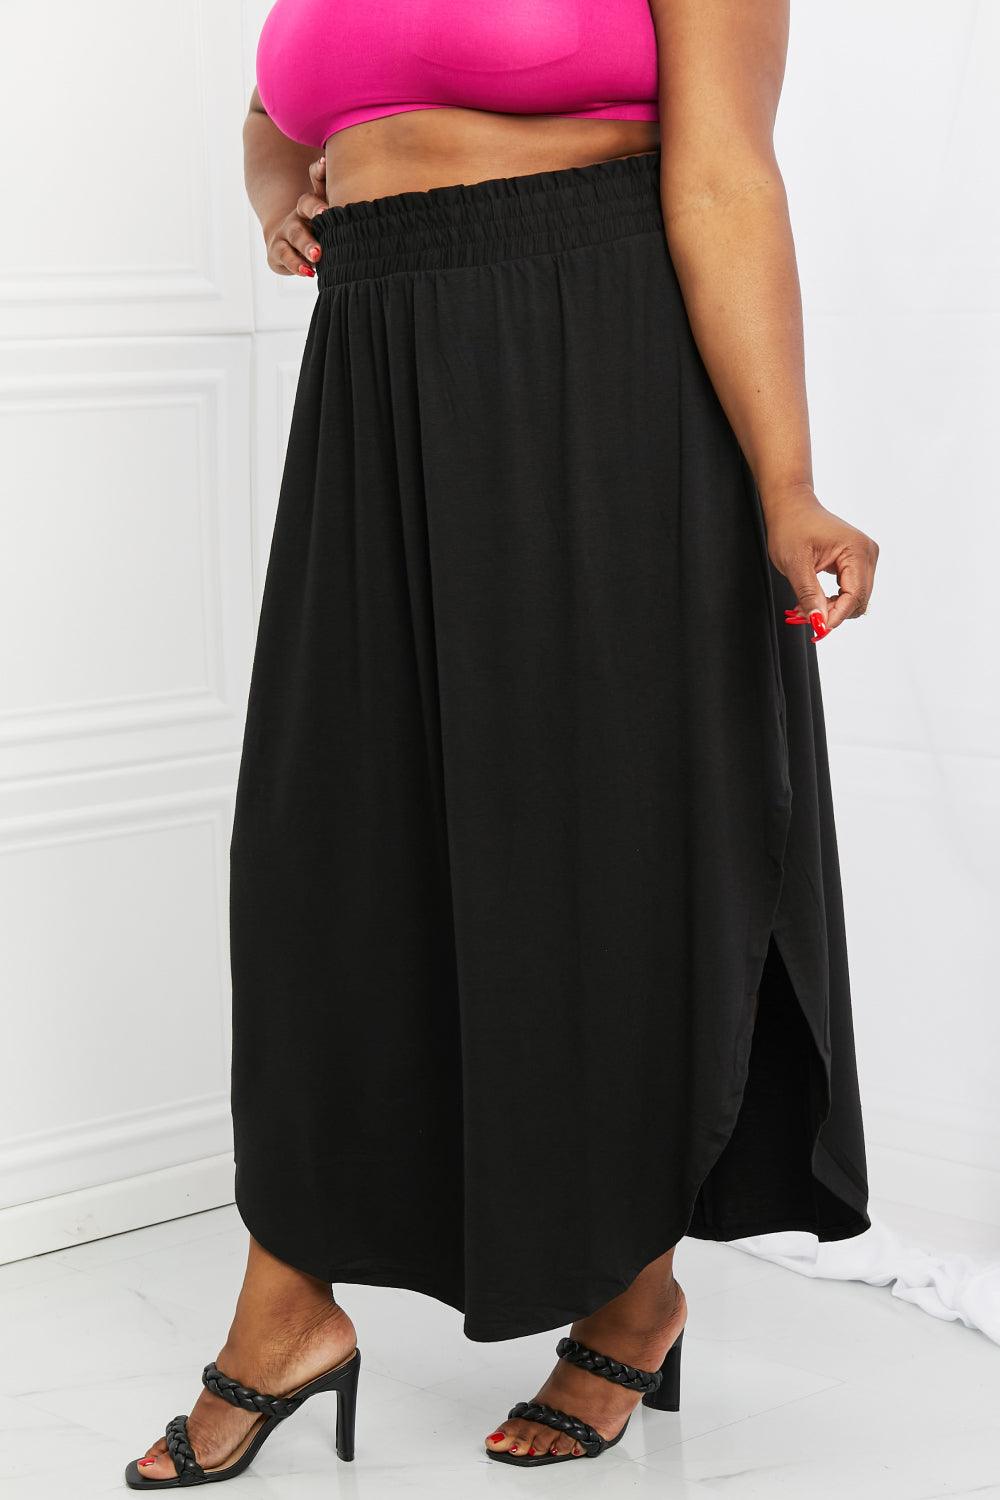 Zenana It's My Time Full Size Side Scoop Scrunch Skirt in Black - The Fiery Jasmine